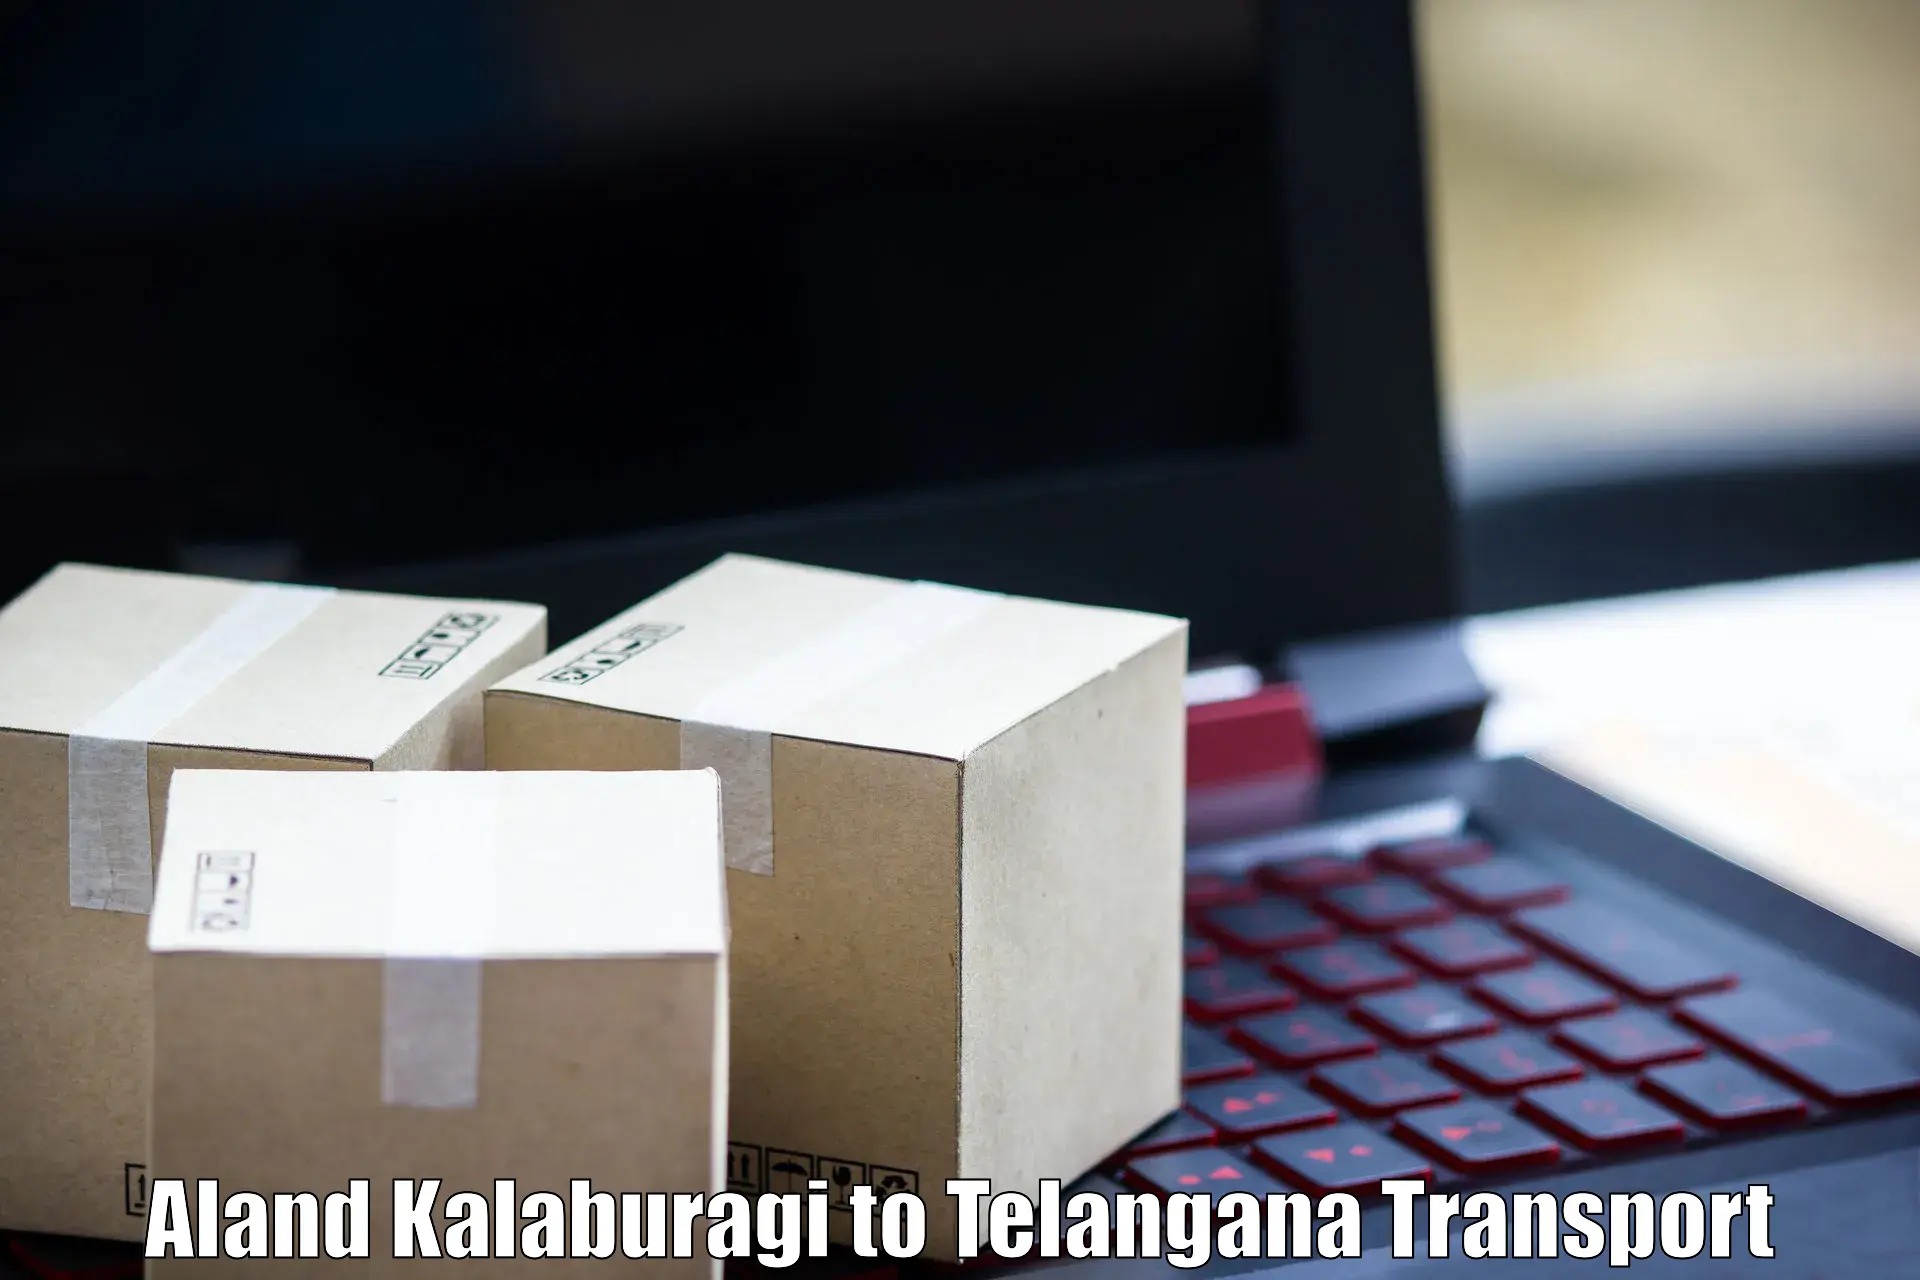 Lorry transport service Aland Kalaburagi to Netrang